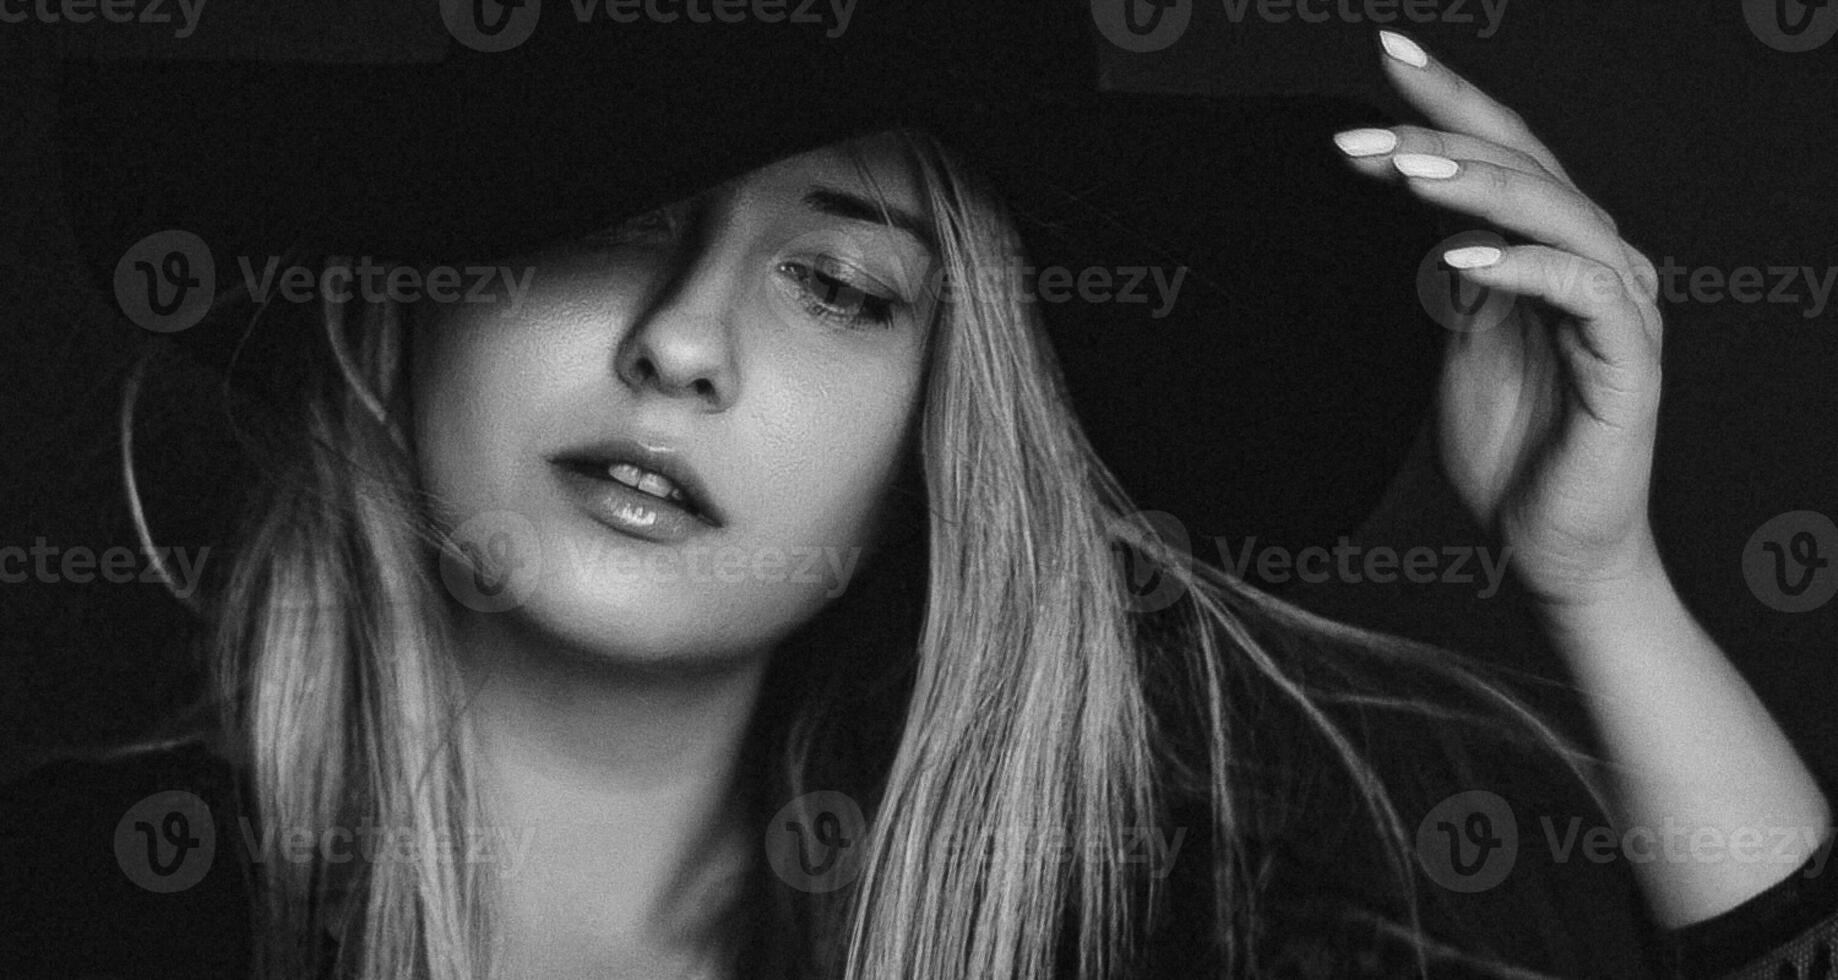 hermosa rubia mujer vistiendo un sombrero, artístico película retrato en negro y blanco para Moda Campaña y belleza marca foto